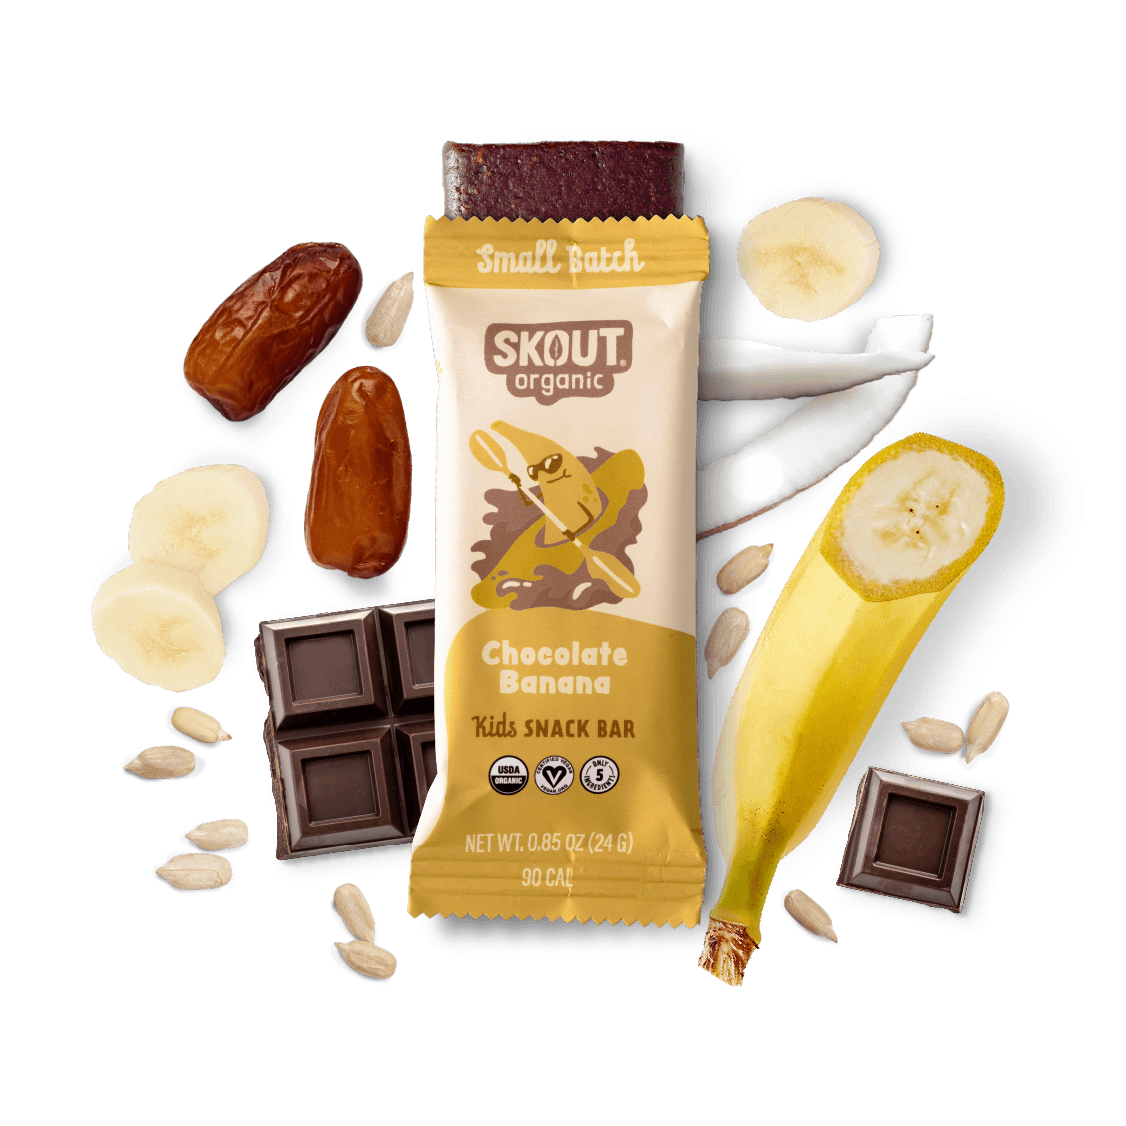 Chocolate Banana Kids Bar Build Your Own Box - Single Bar Skout Organic Bar 